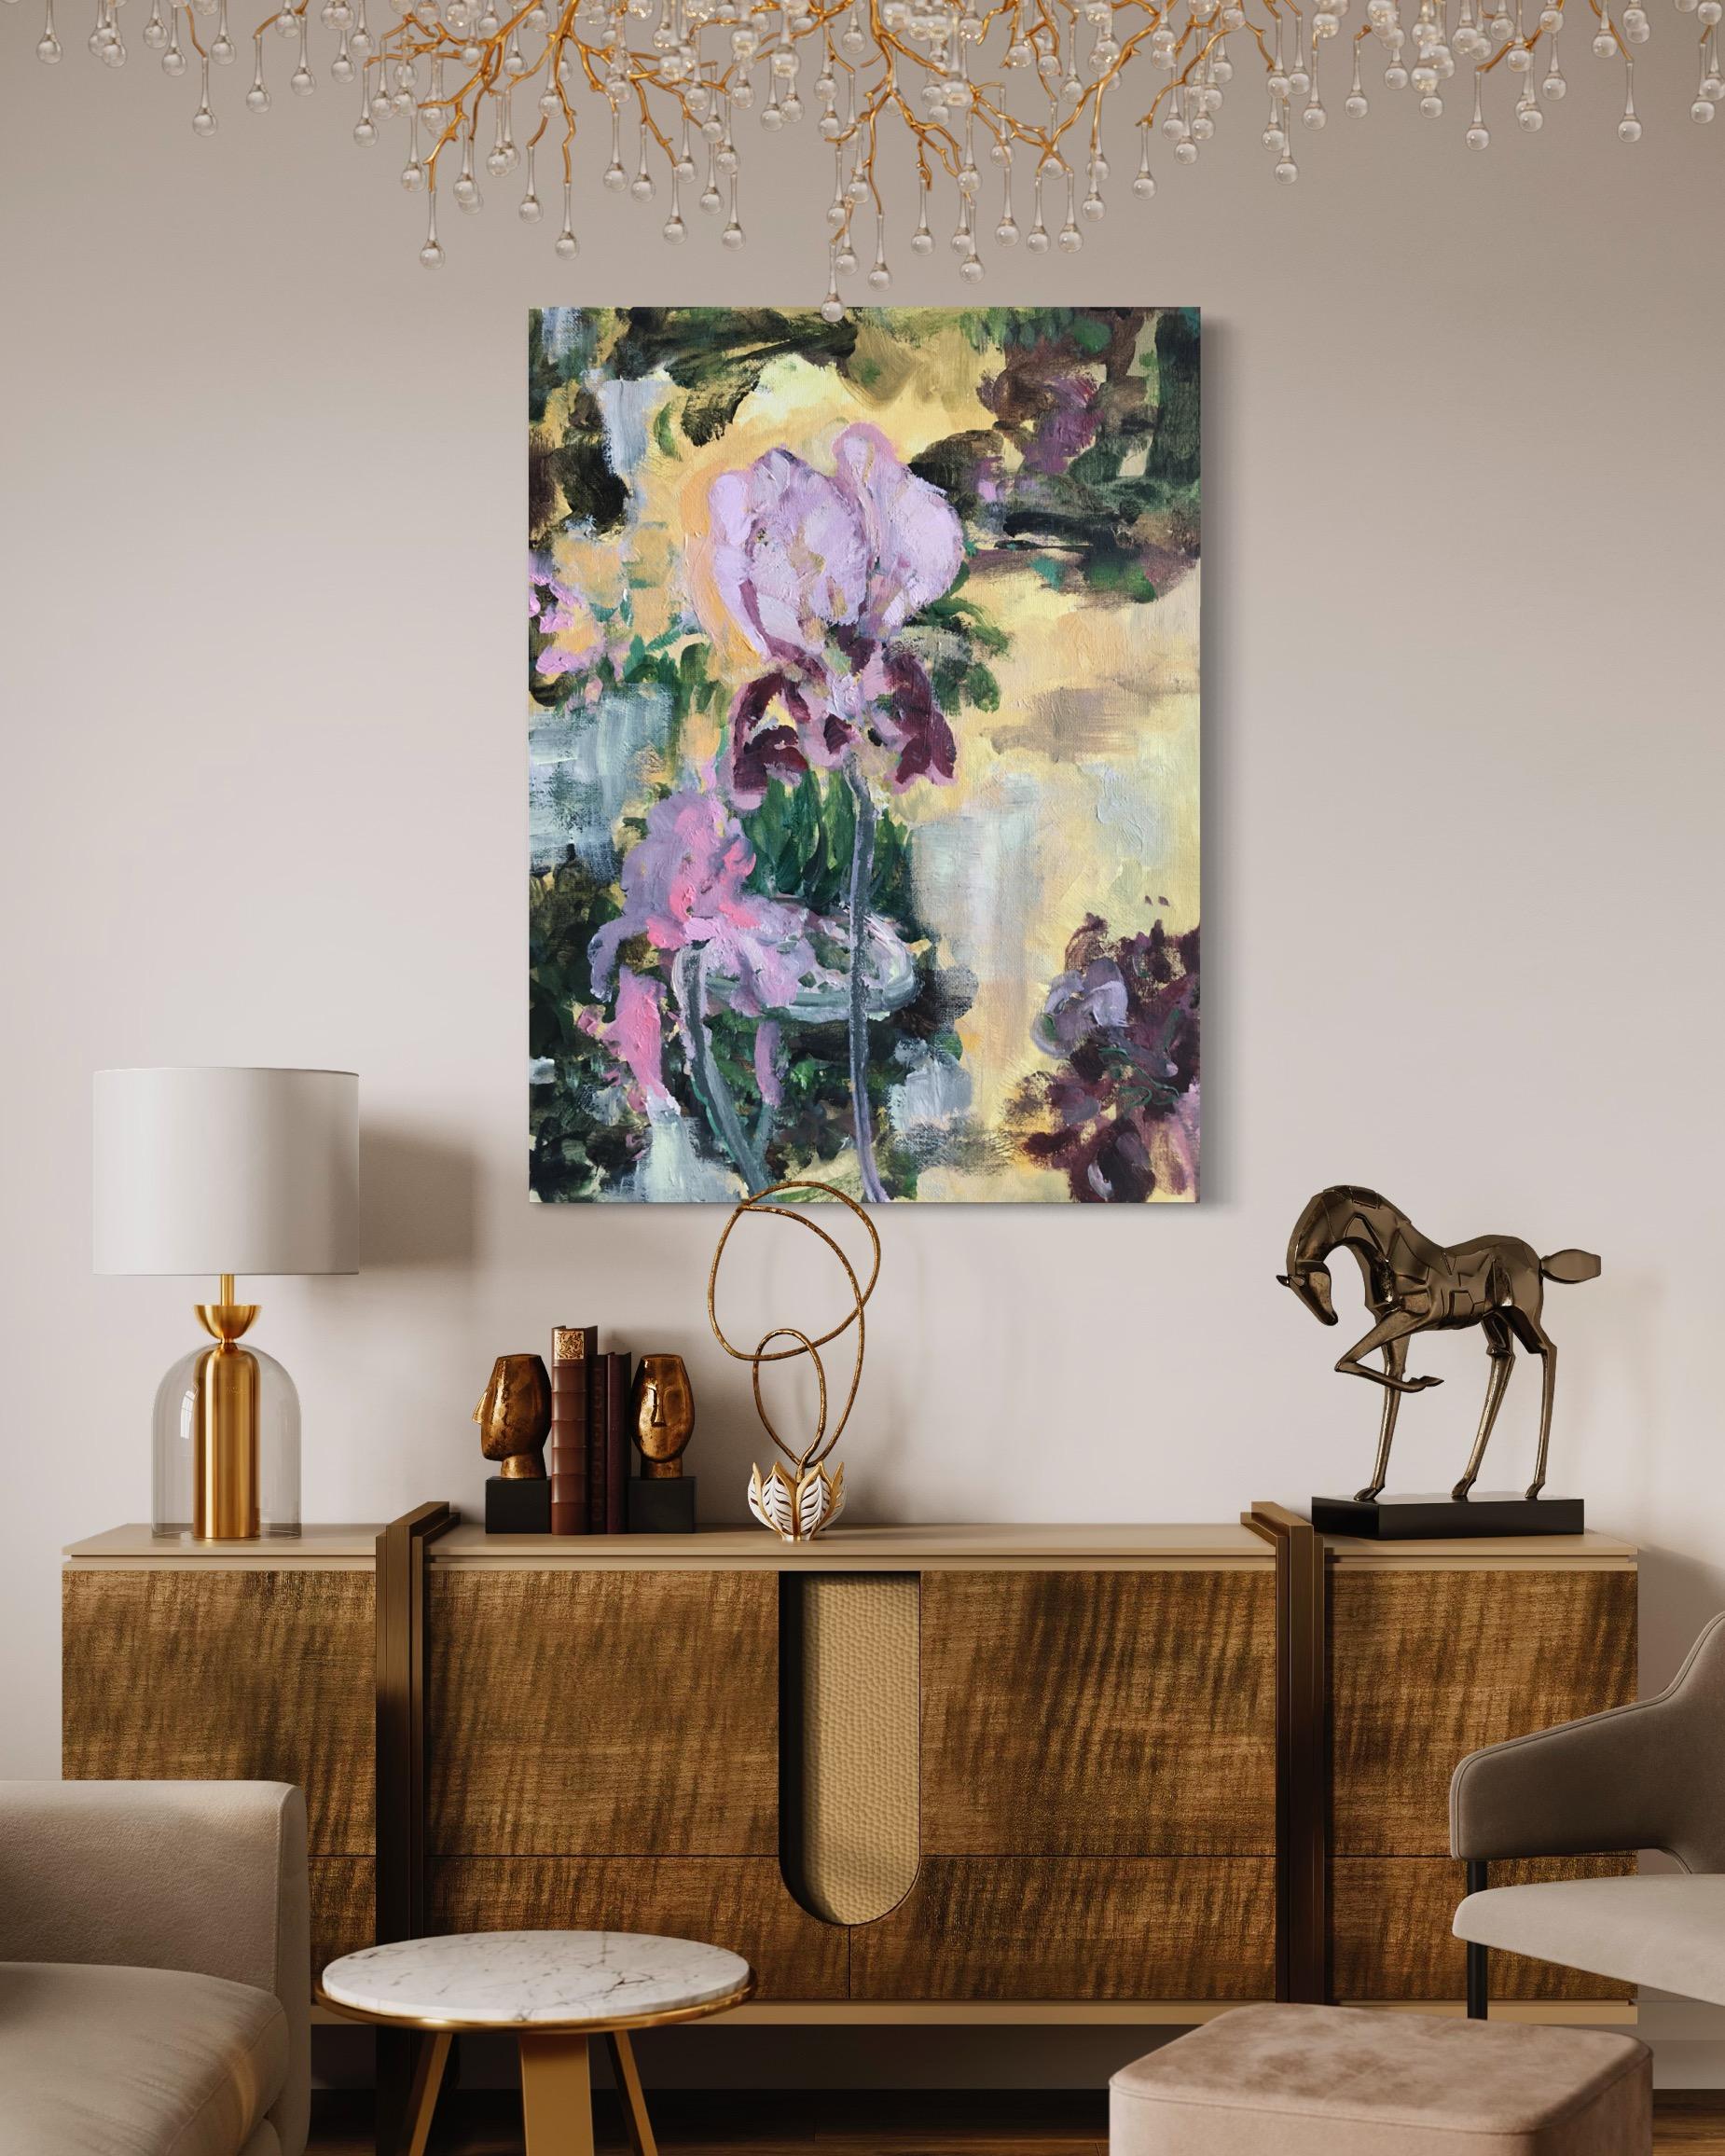 Edition-Golden Benton Irises  Limited#1 hand paint finish, Expression, UK Artist - Painting by Shizico Yi